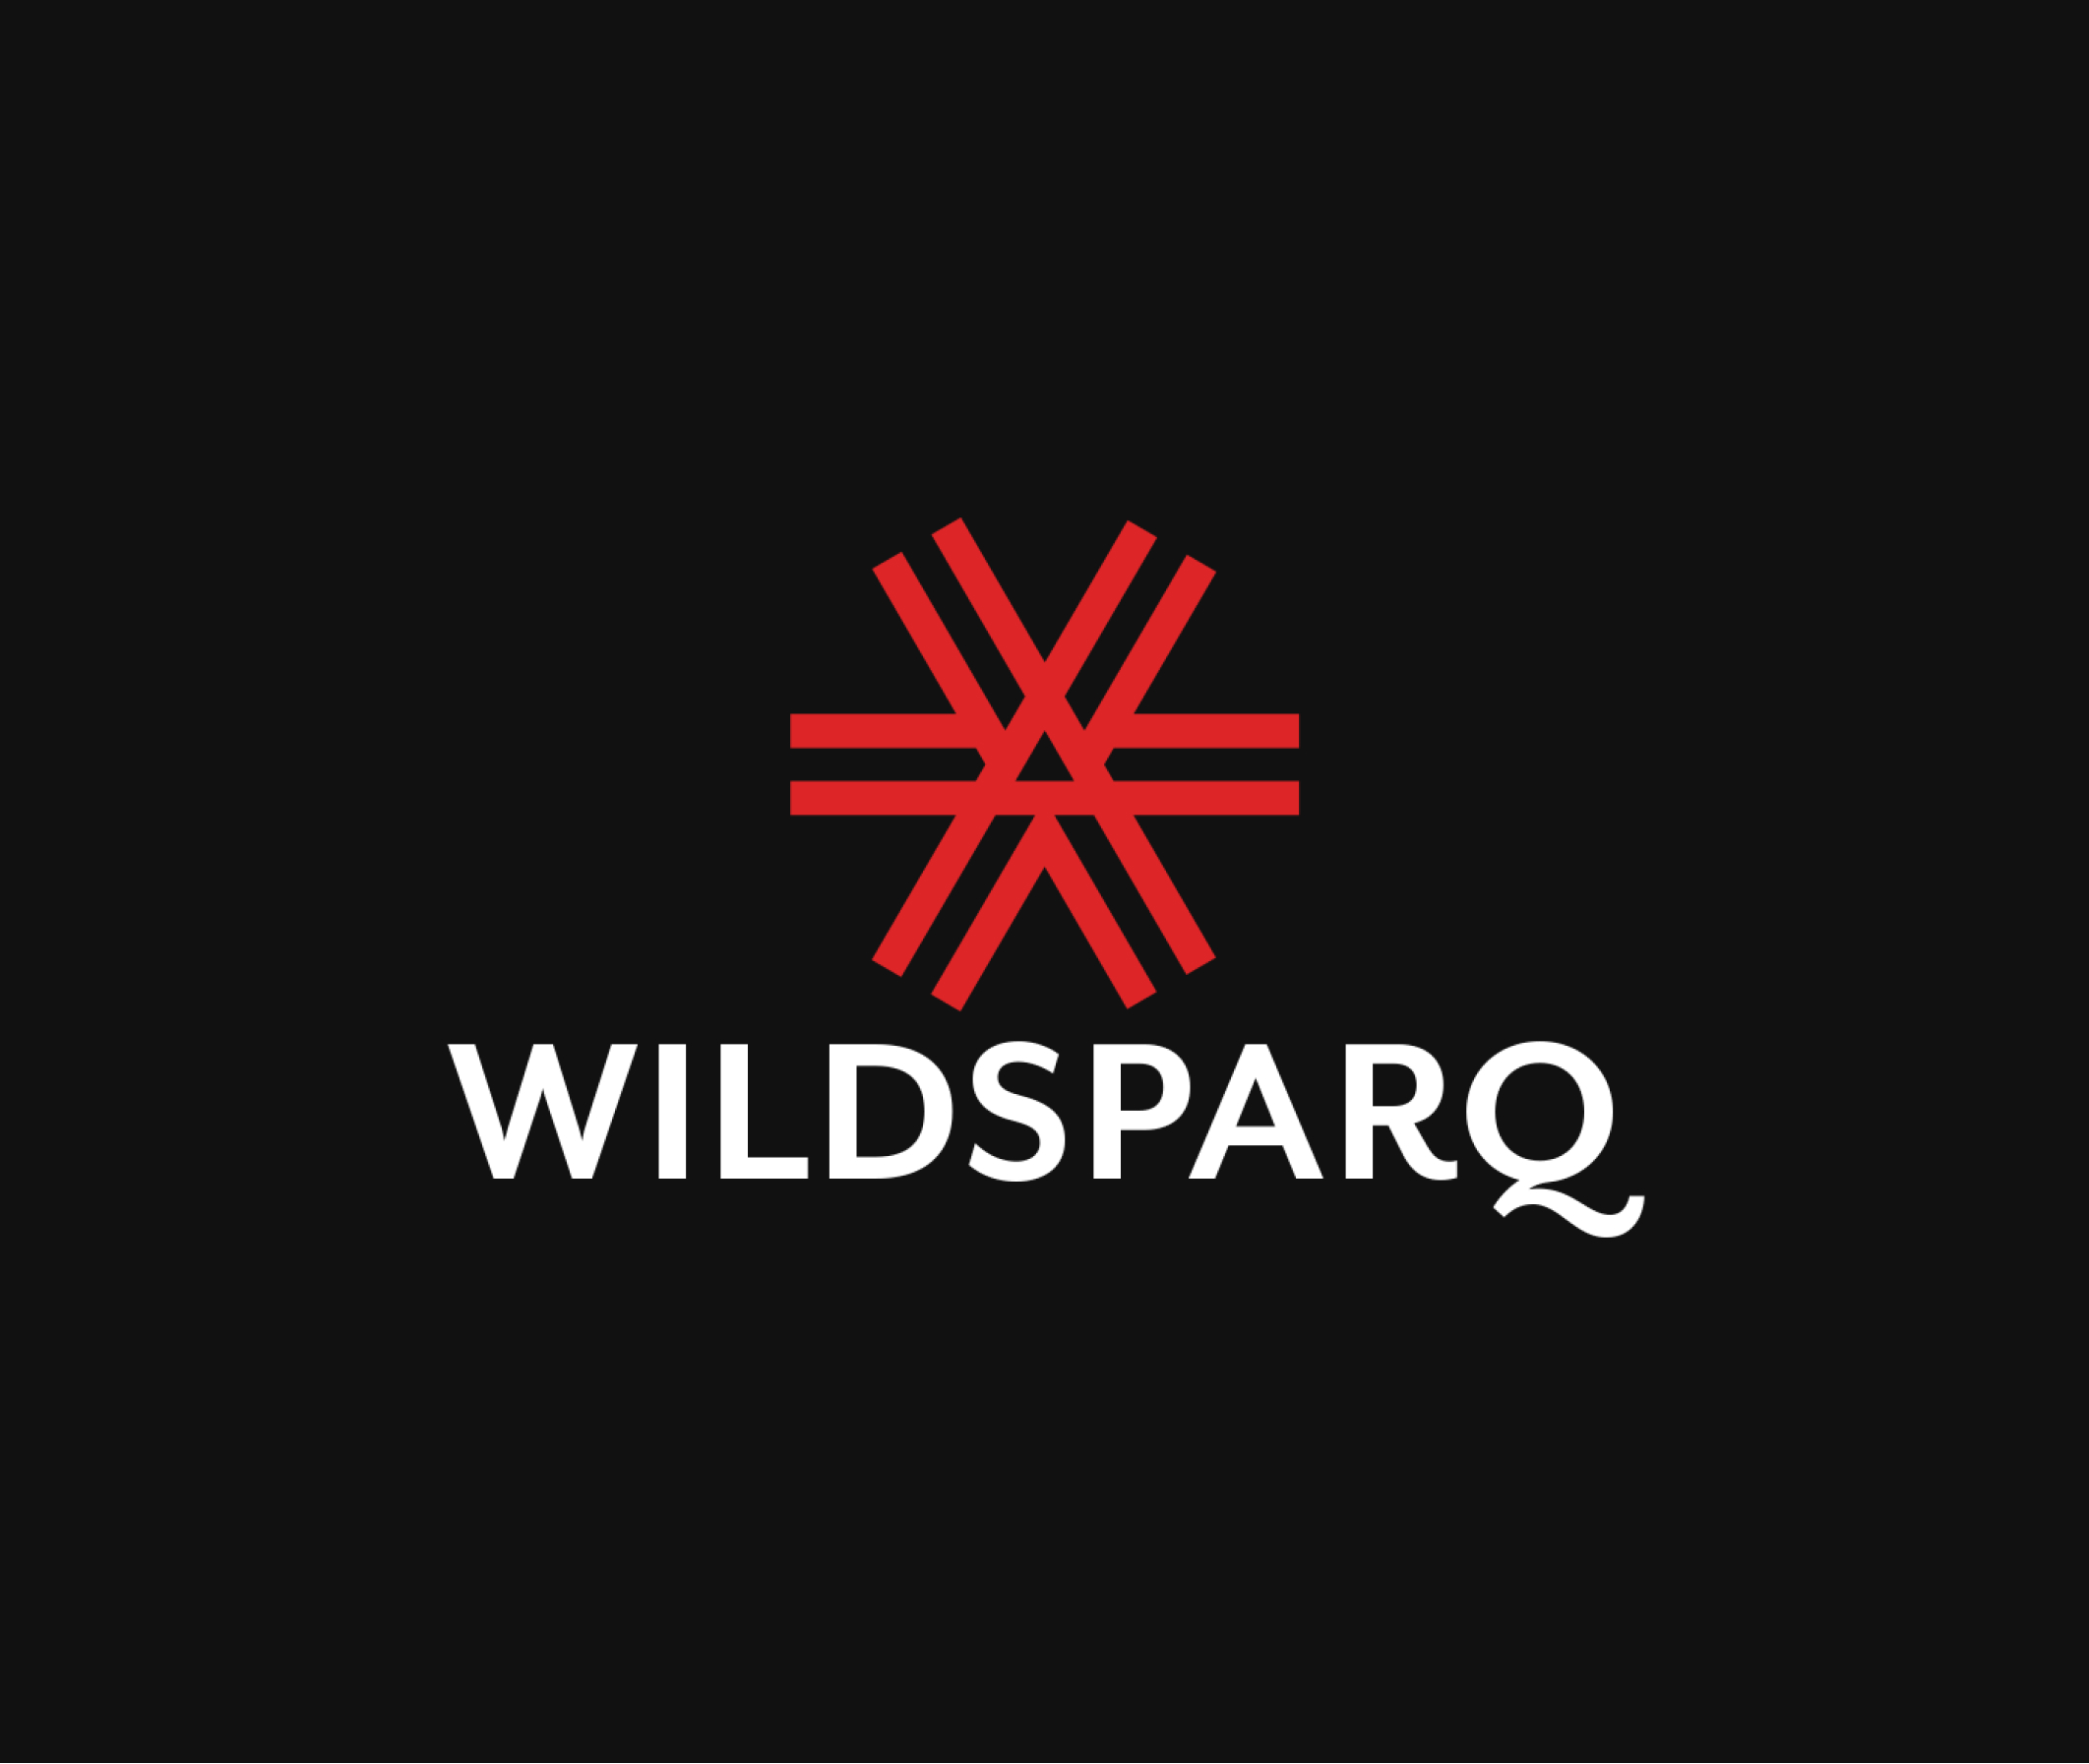 Wildsparq logo